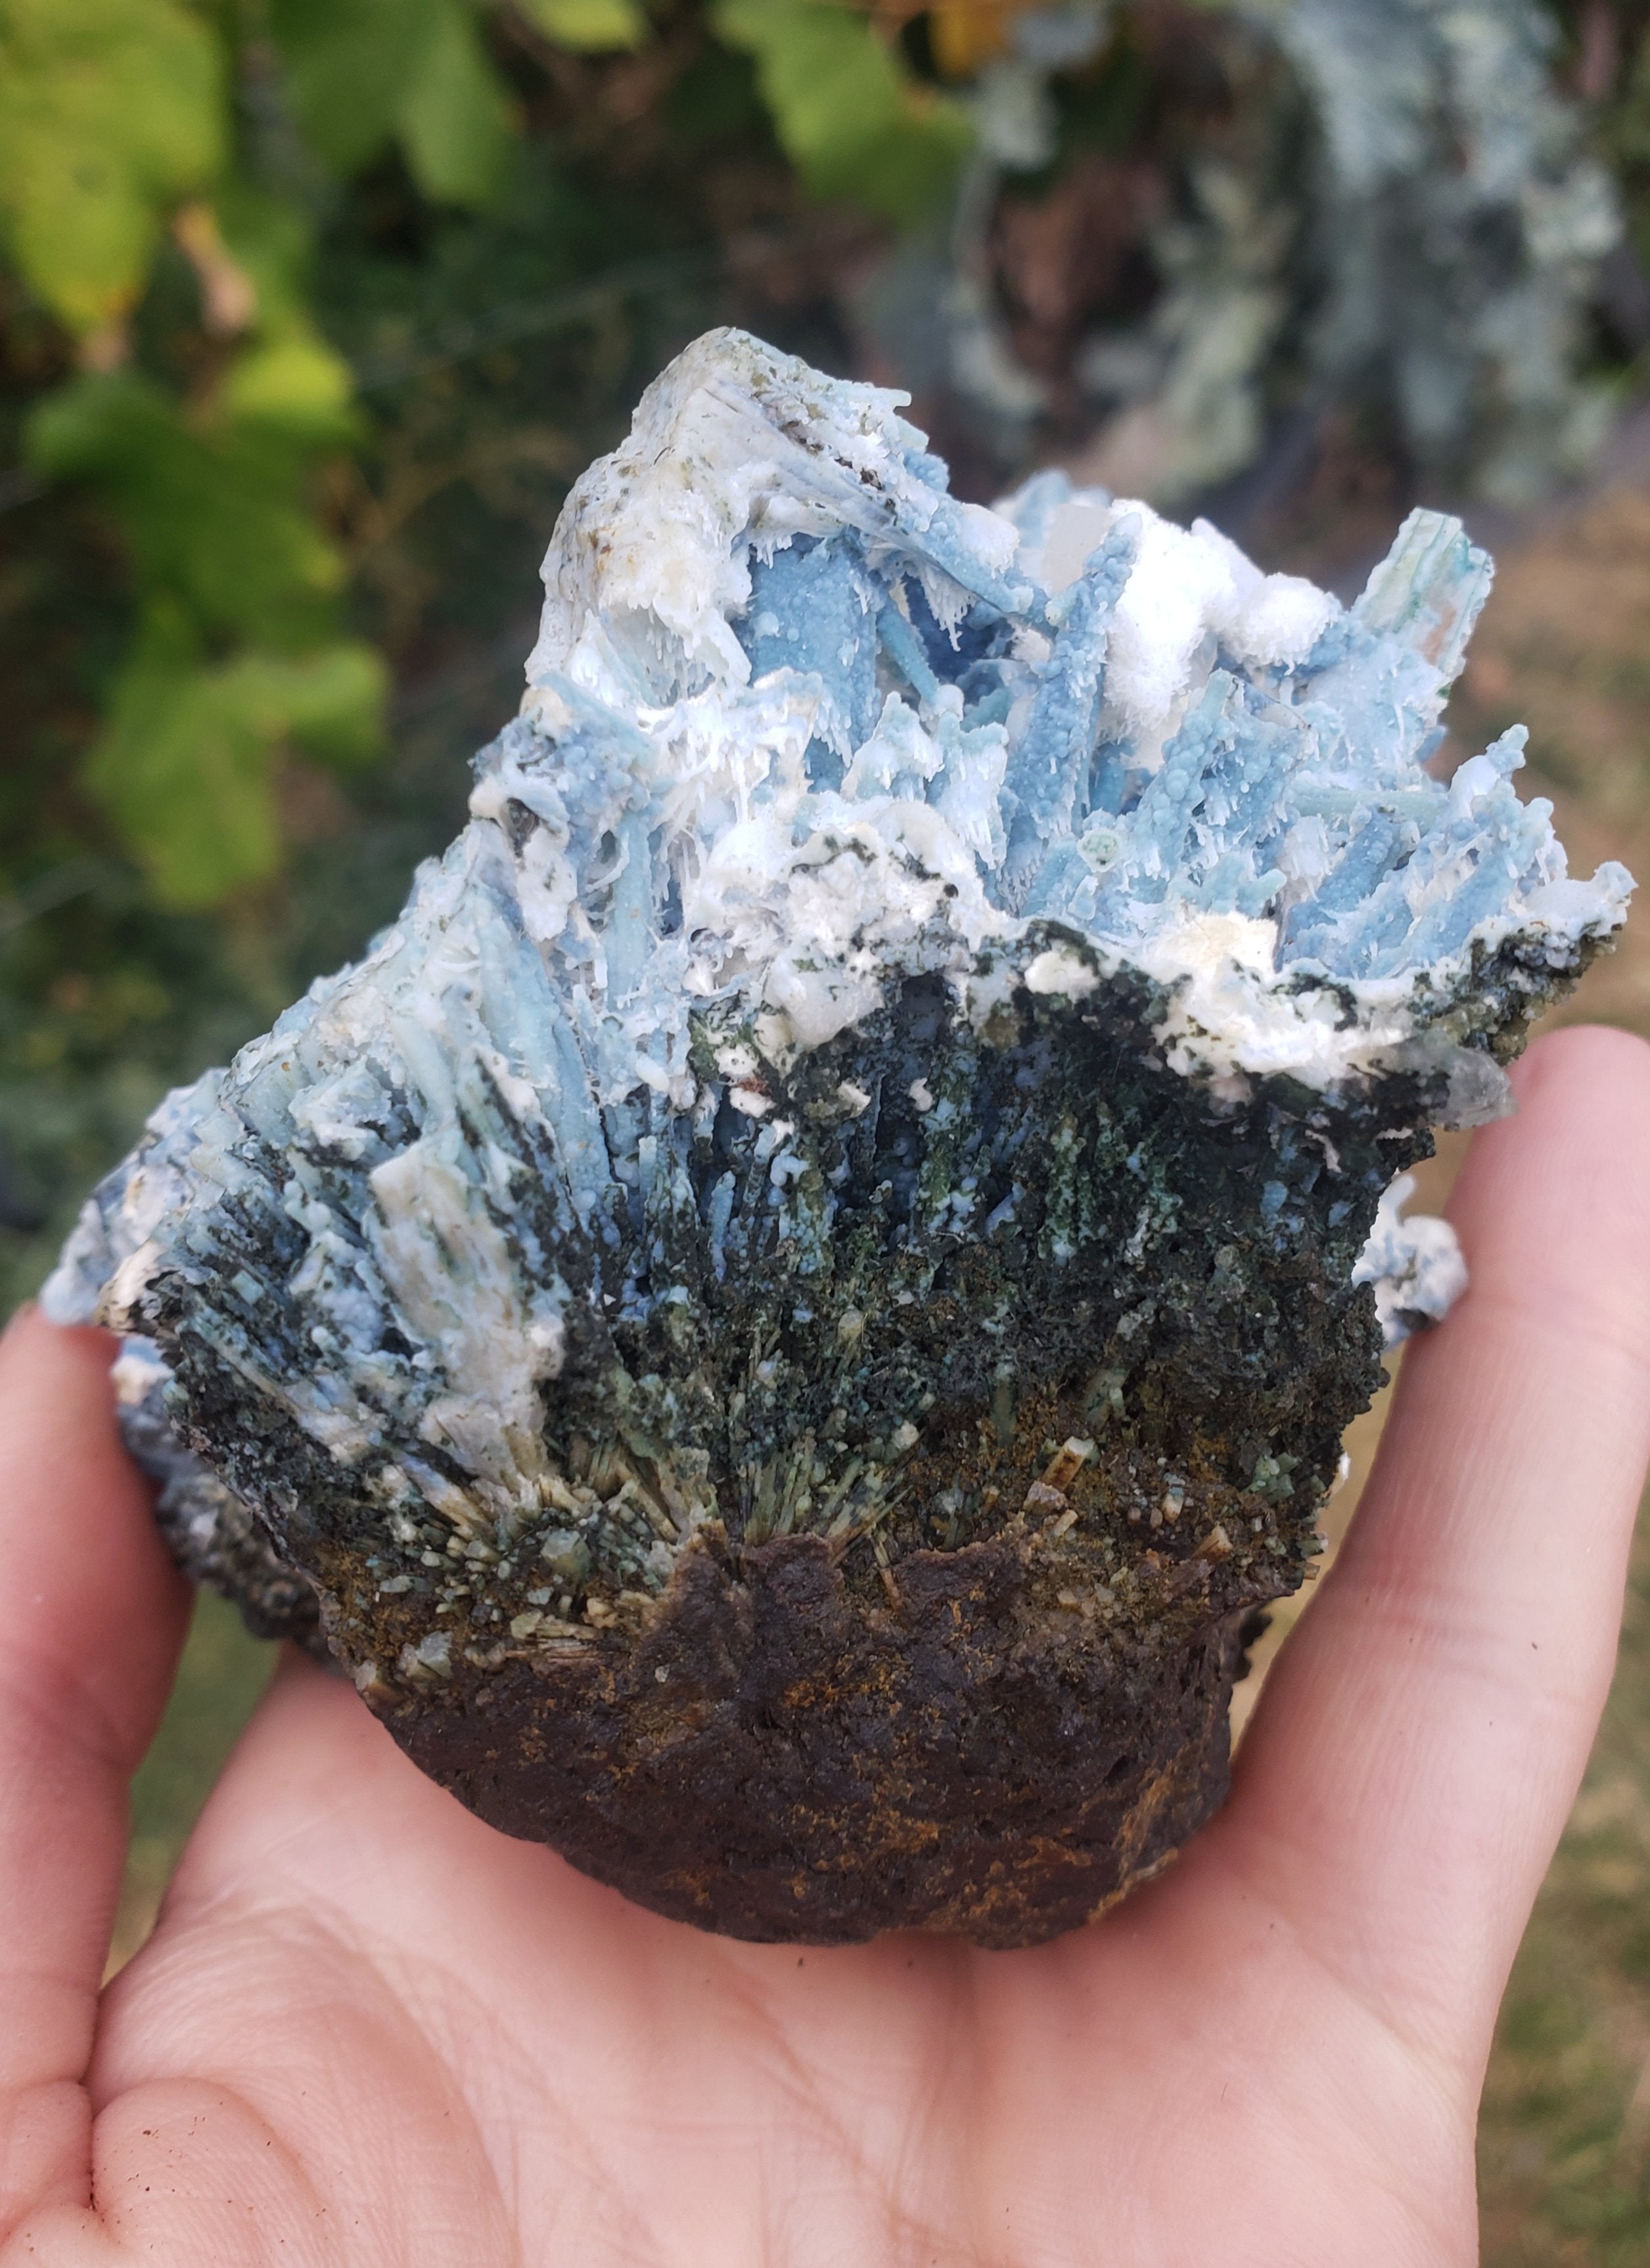 Blue coral Chalcedony covering scolocite + okenite, mordonite,  calcite